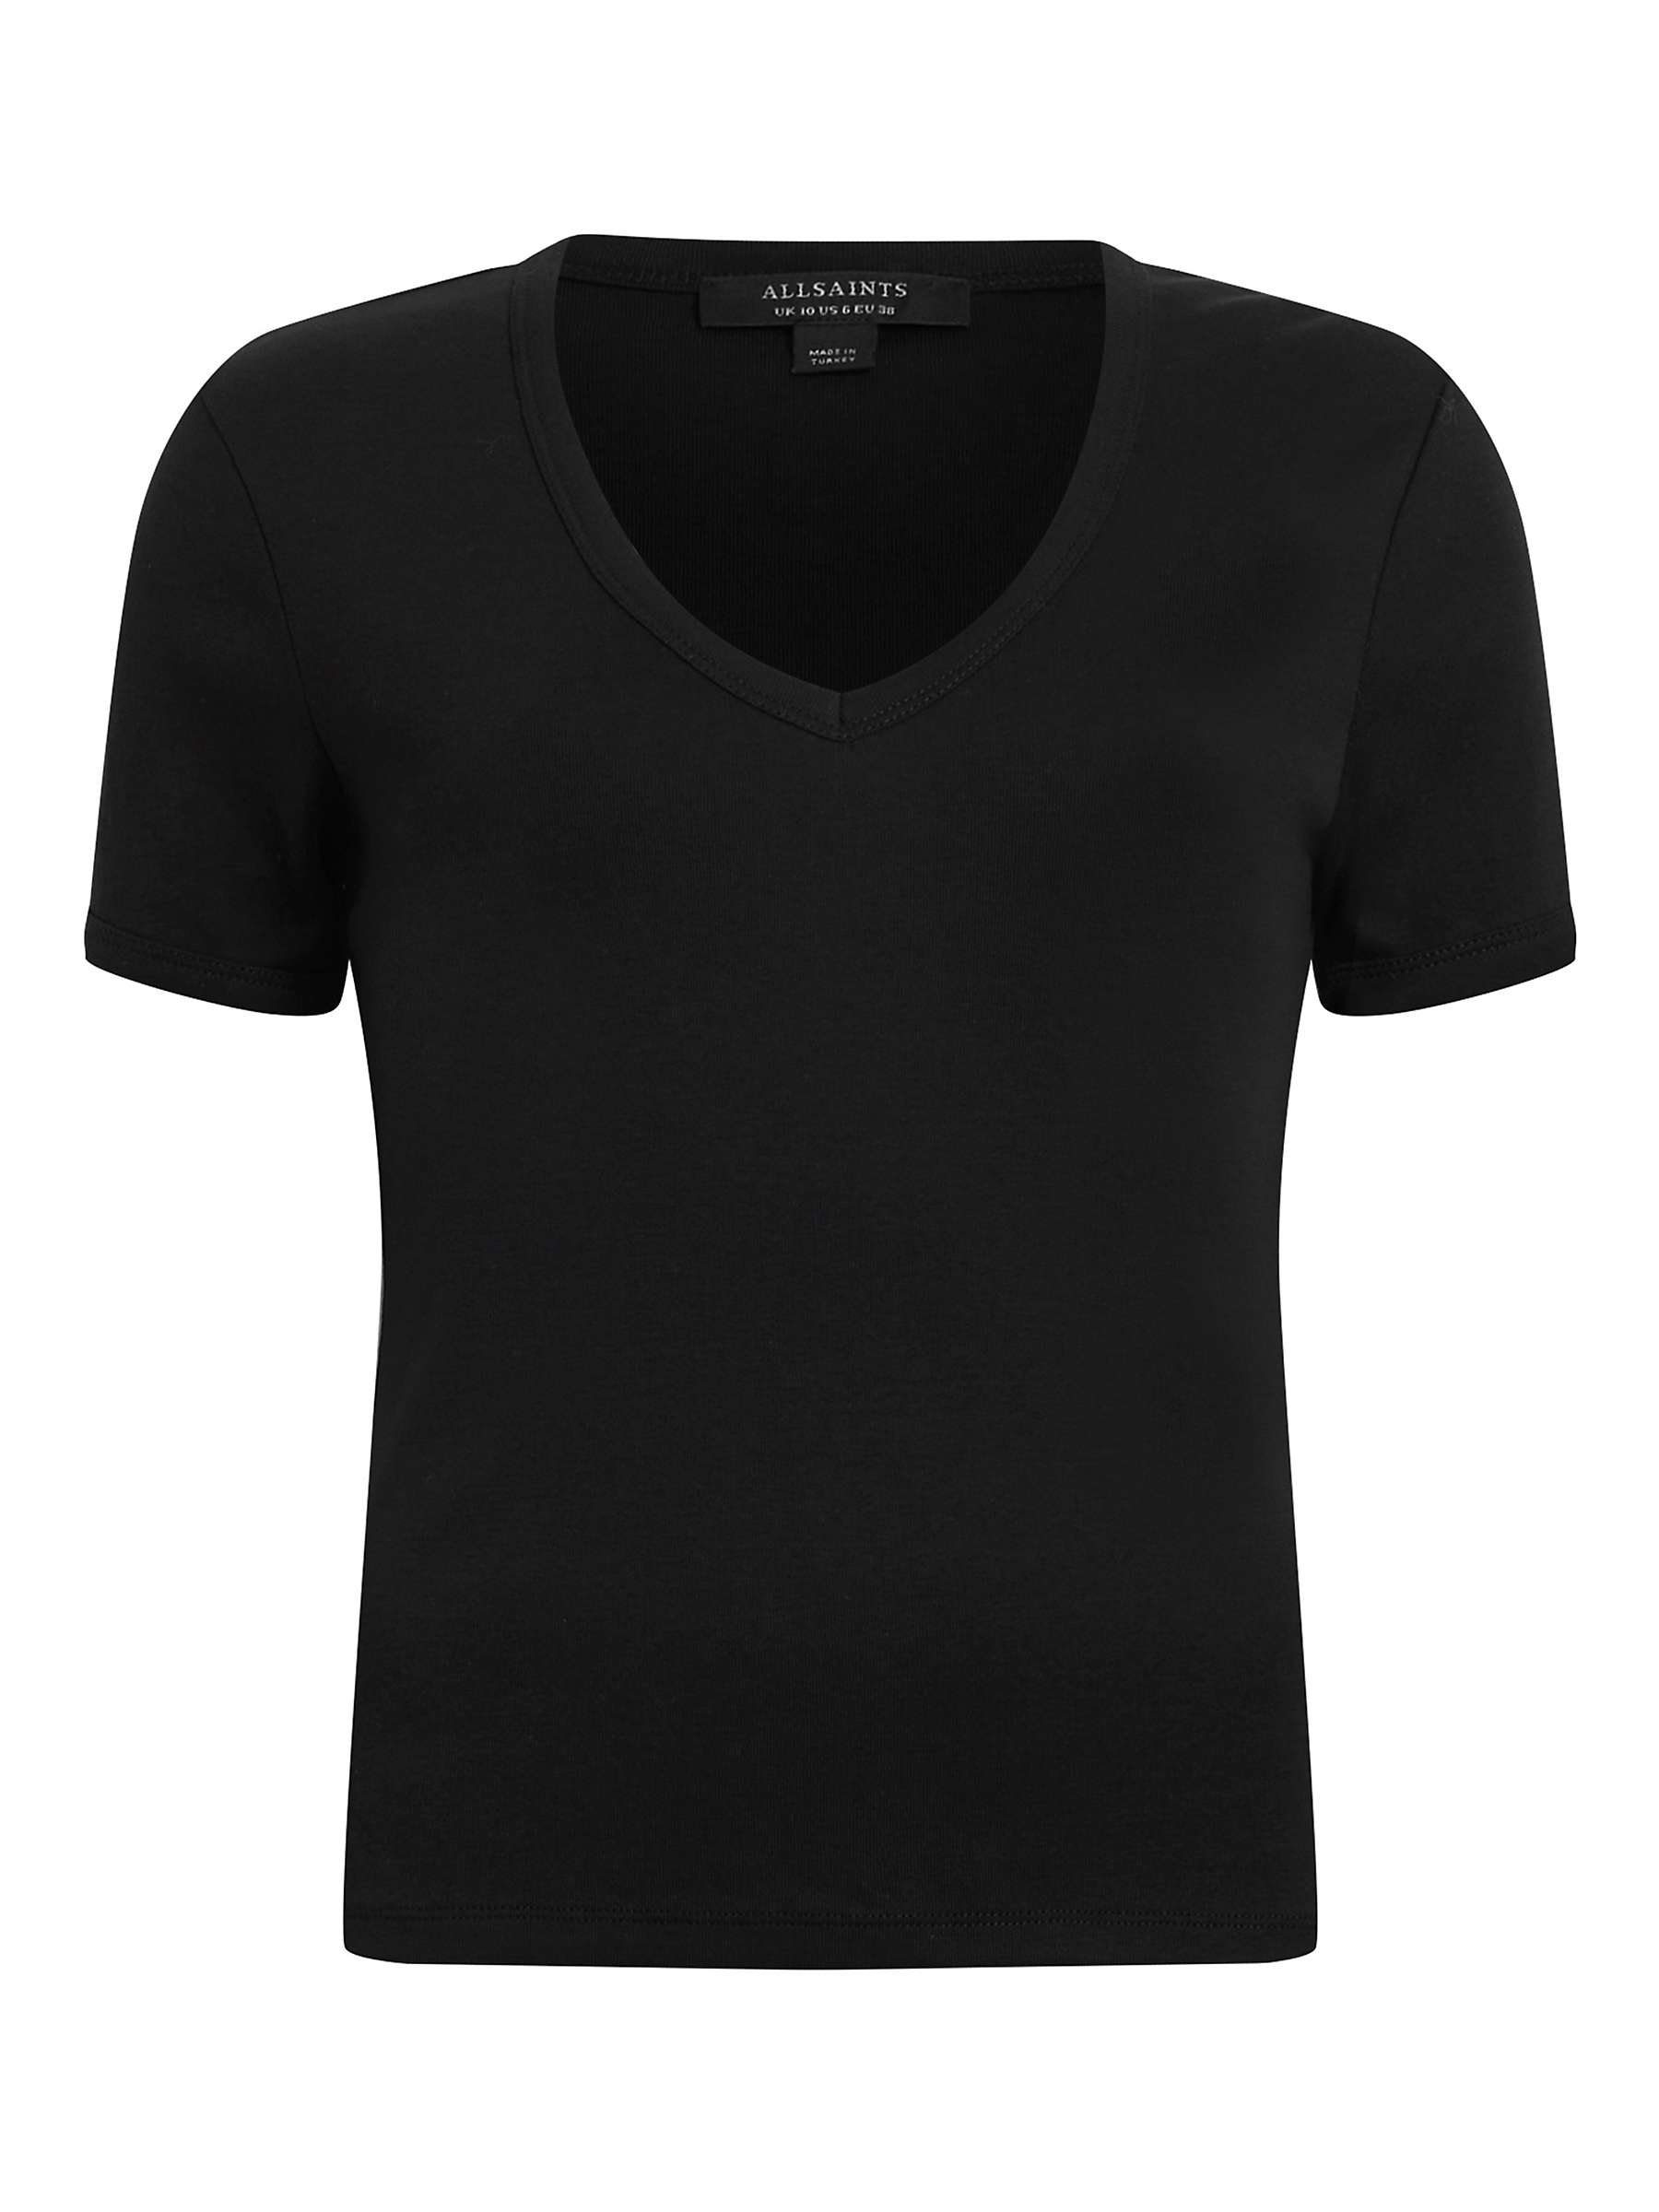 Buy AllSaints Evie V-Neck T-Shirt Online at johnlewis.com